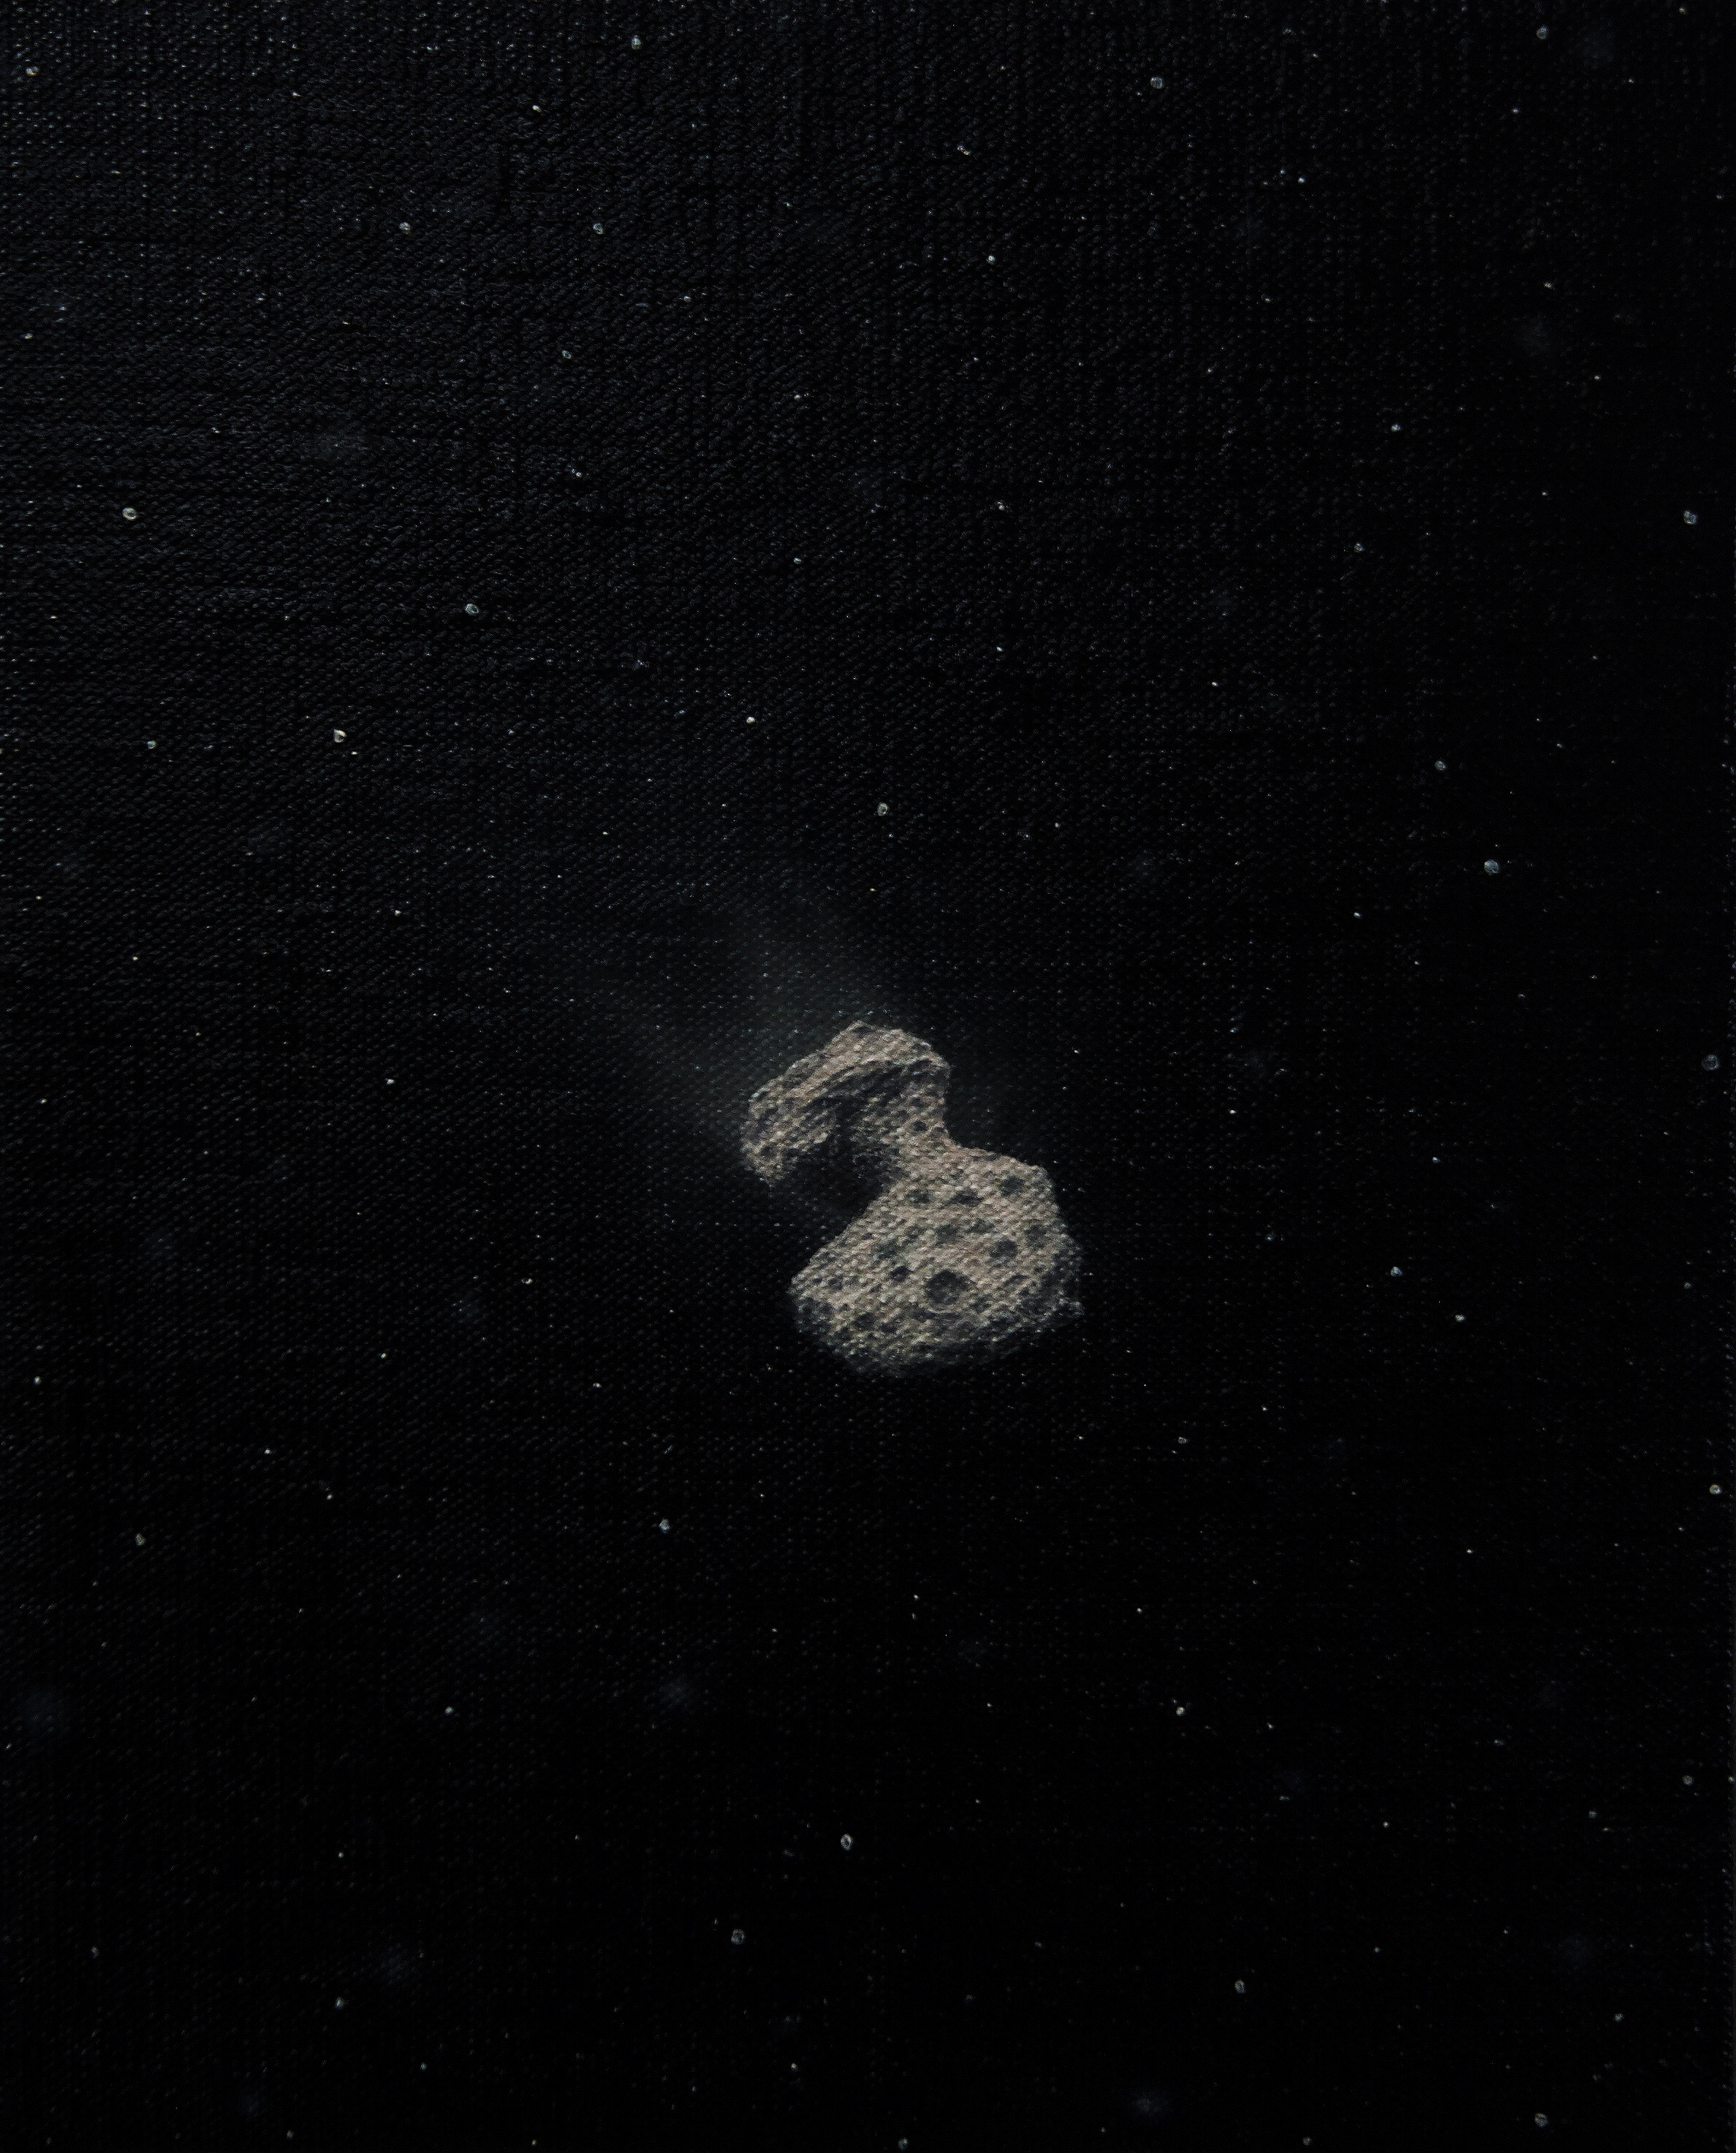 Rosetta is in orbit around 67PChuryumovGerasimenko